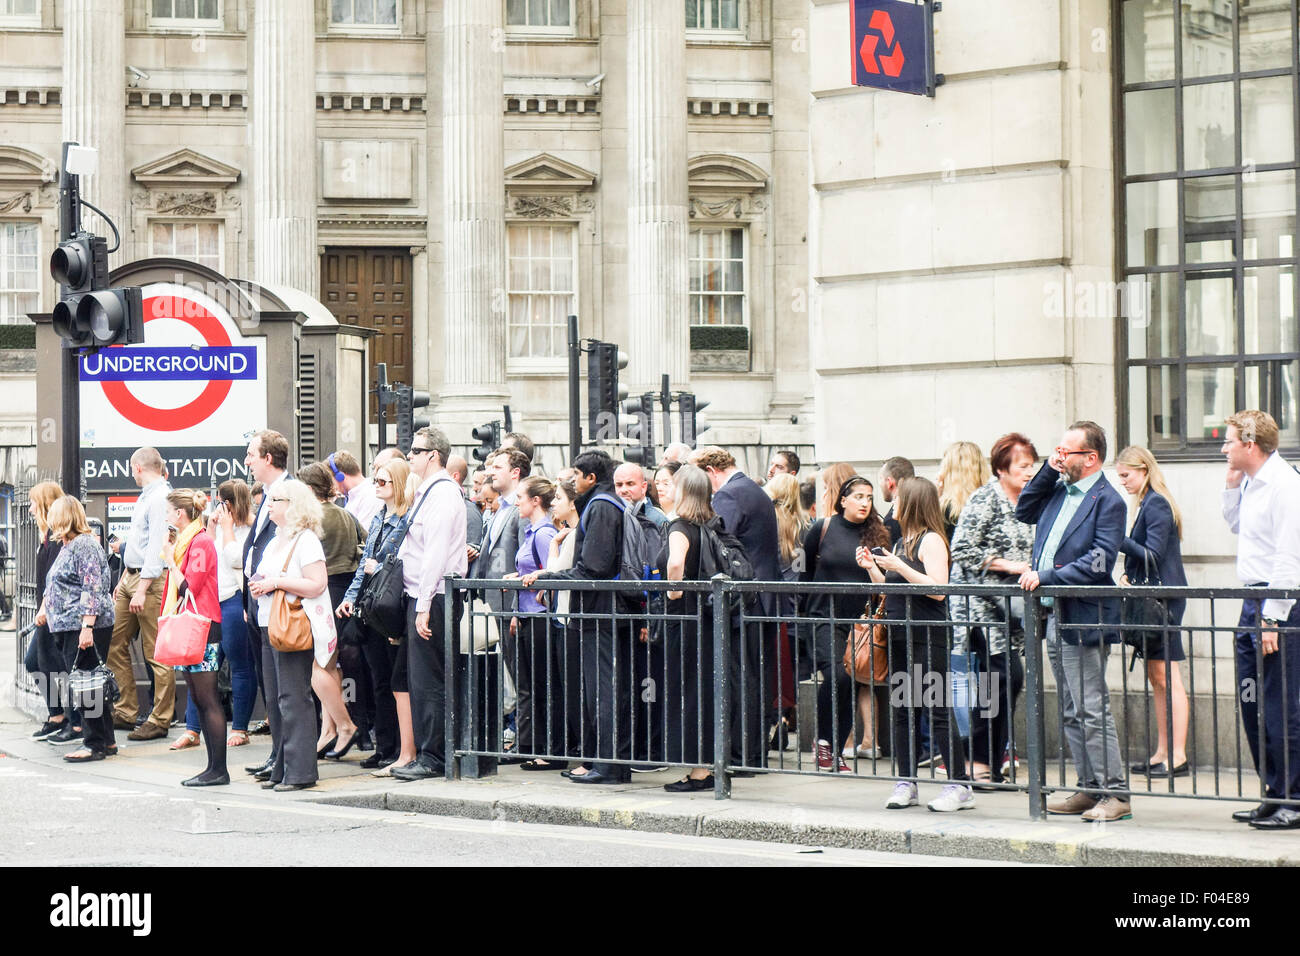 Londra, Regno Unito. Il 6 agosto, 2015. Pendolari presso la banca nella città di Londra stanno cercando di trovare alternative percorsi di lavoro dovuta all'attività industriale lo sciopero dalla metropolitana di Londra. Credito: Newsworthy Fotografia/Alamy Live News. Foto Stock